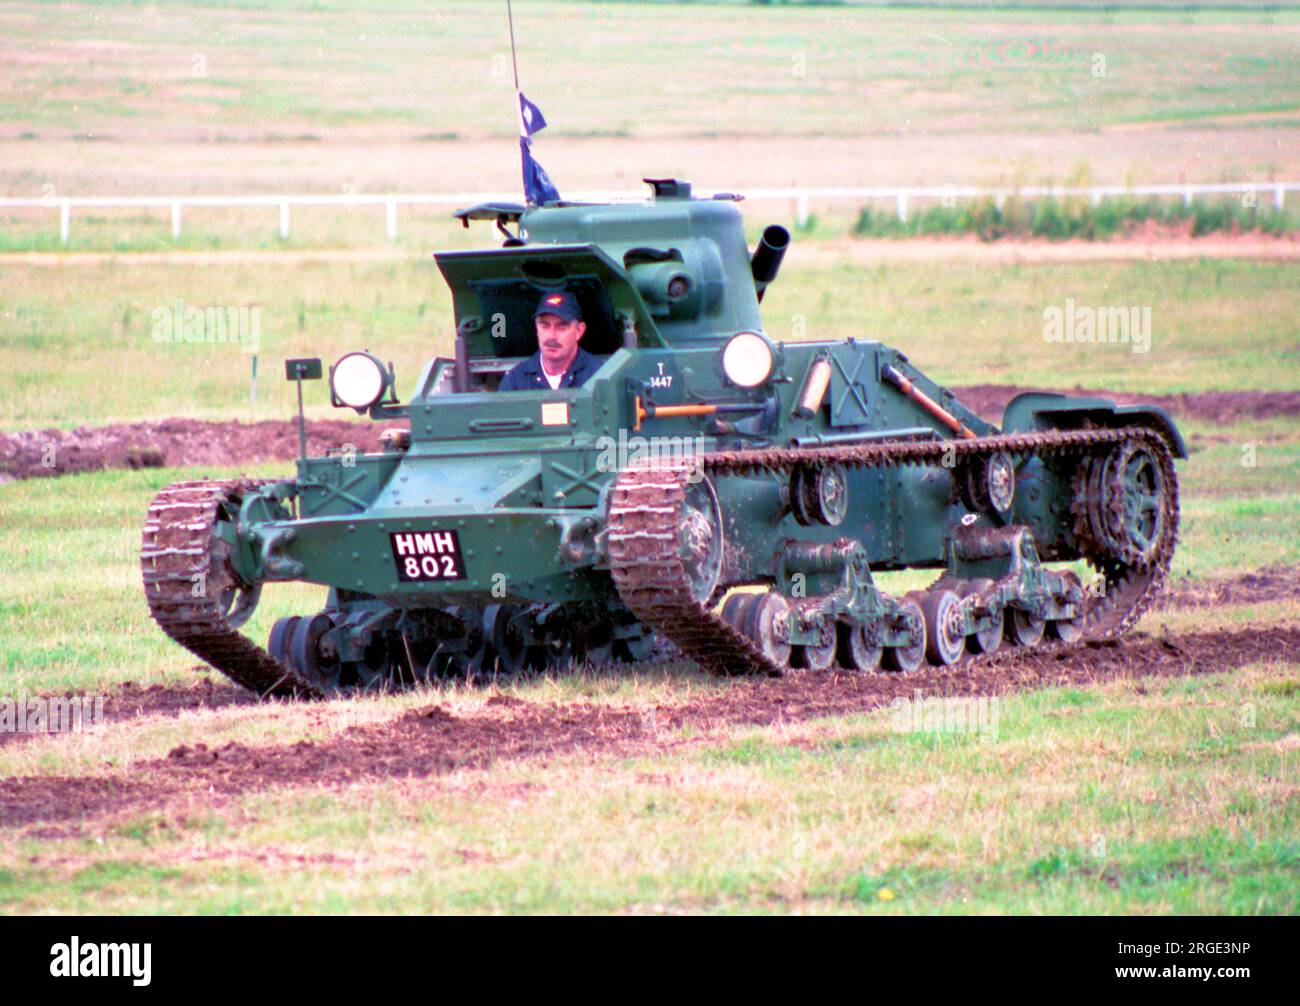 Vickers Matilda I Infantry Tank reproduction T3447, lors de la journée portes ouvertes 2006 de Larkhill Royal Artillery, manoeuvrant sur l'hippodrome de Larkhill / le terrain d'exposition. Cette Matilda I a été reconstruite en utilisant une coque originale qui avait été bien utilisée comme cible anti-char. Tous les trous sauf un ont été remplis et divers composants de transmission modernes ont été installés pour produire un Matilda I. Banque D'Images